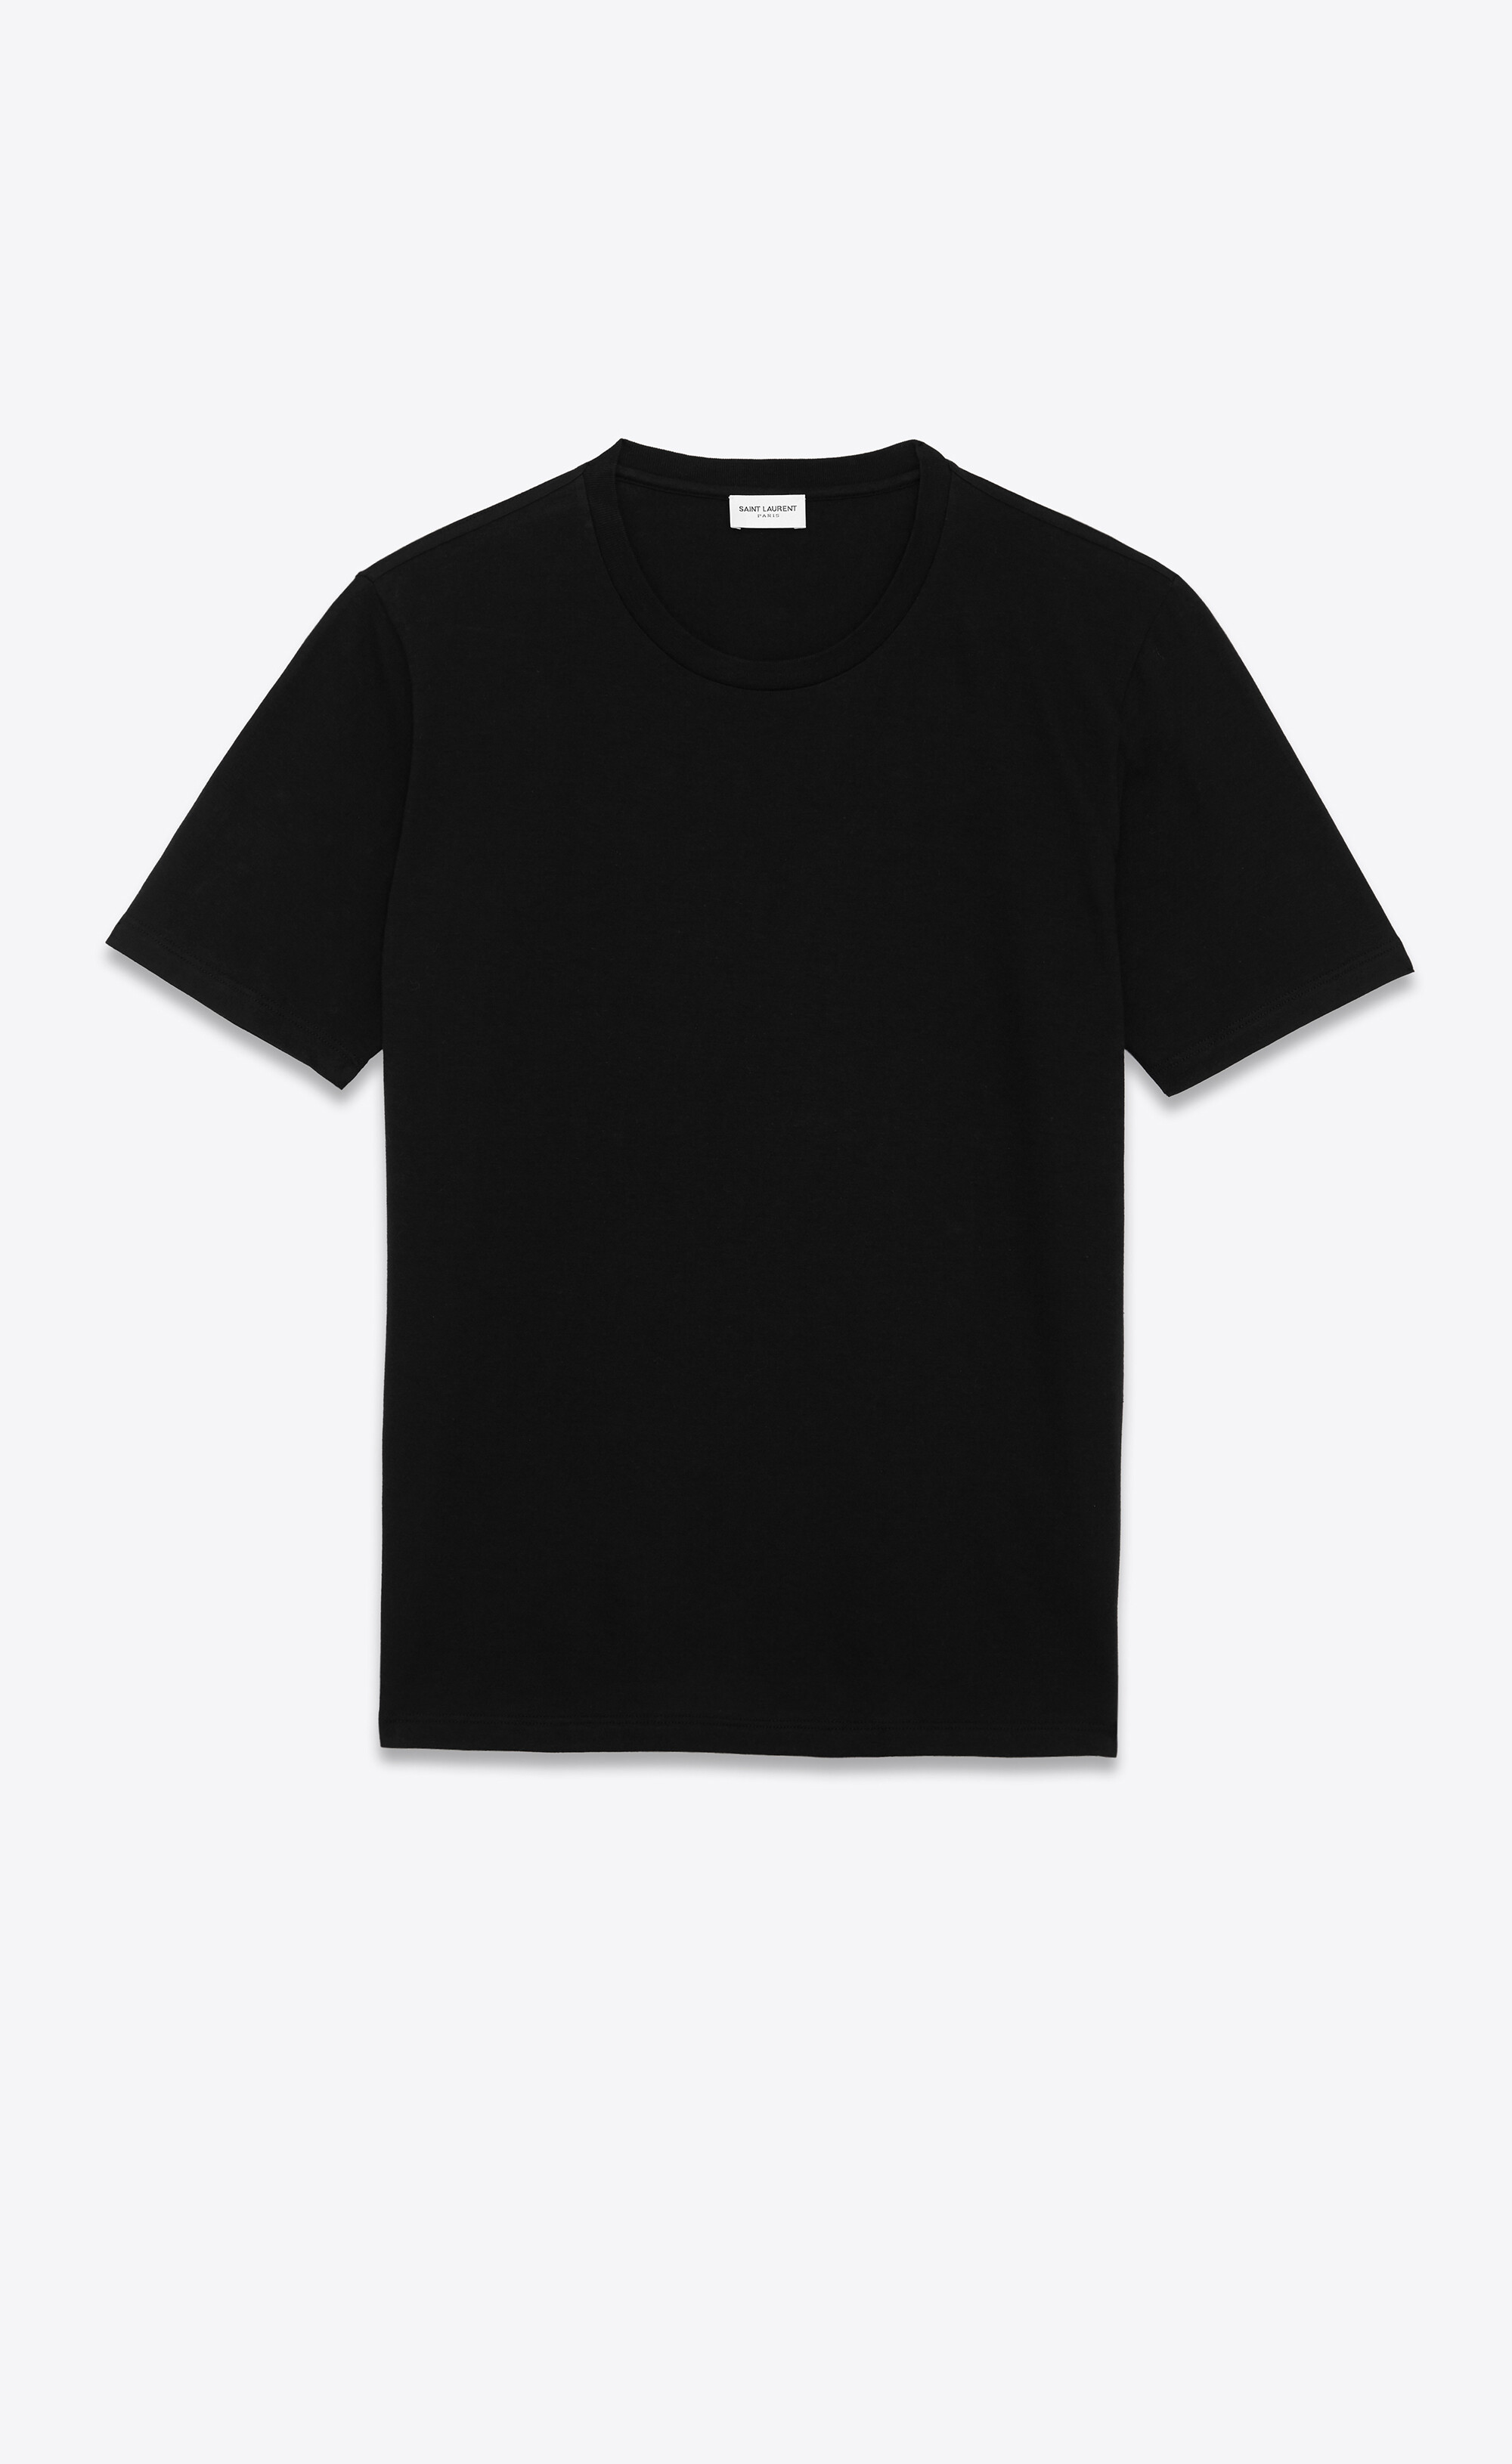 Save 10% Saint Laurent Cotton Crew-neck T-shirt in Black Womens Tops Saint Laurent Tops 